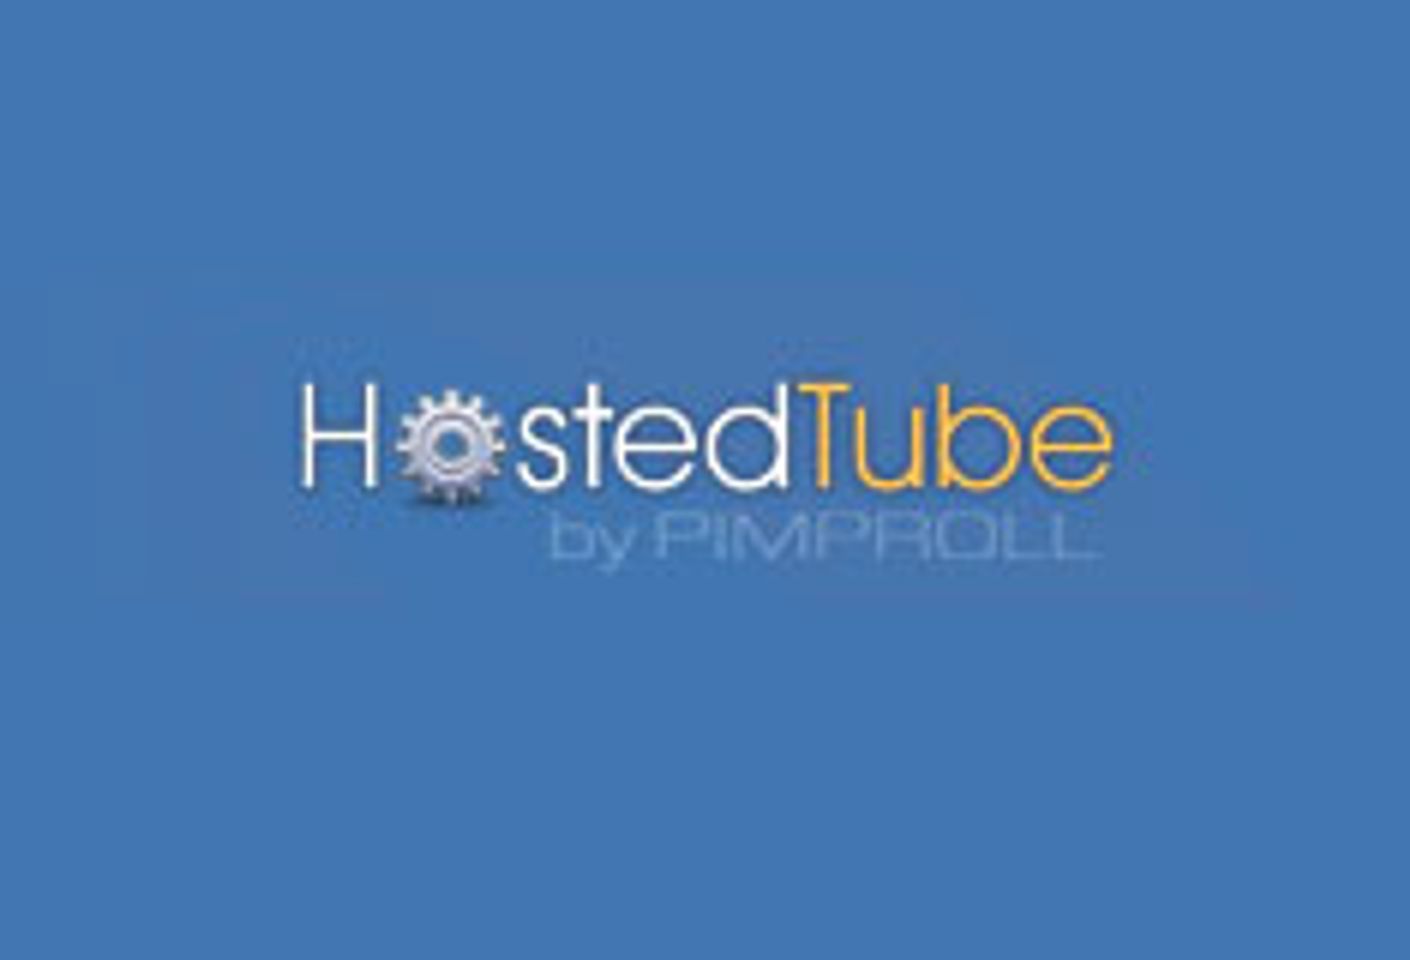 HostedTube Giving Away 100k in Free Traffic